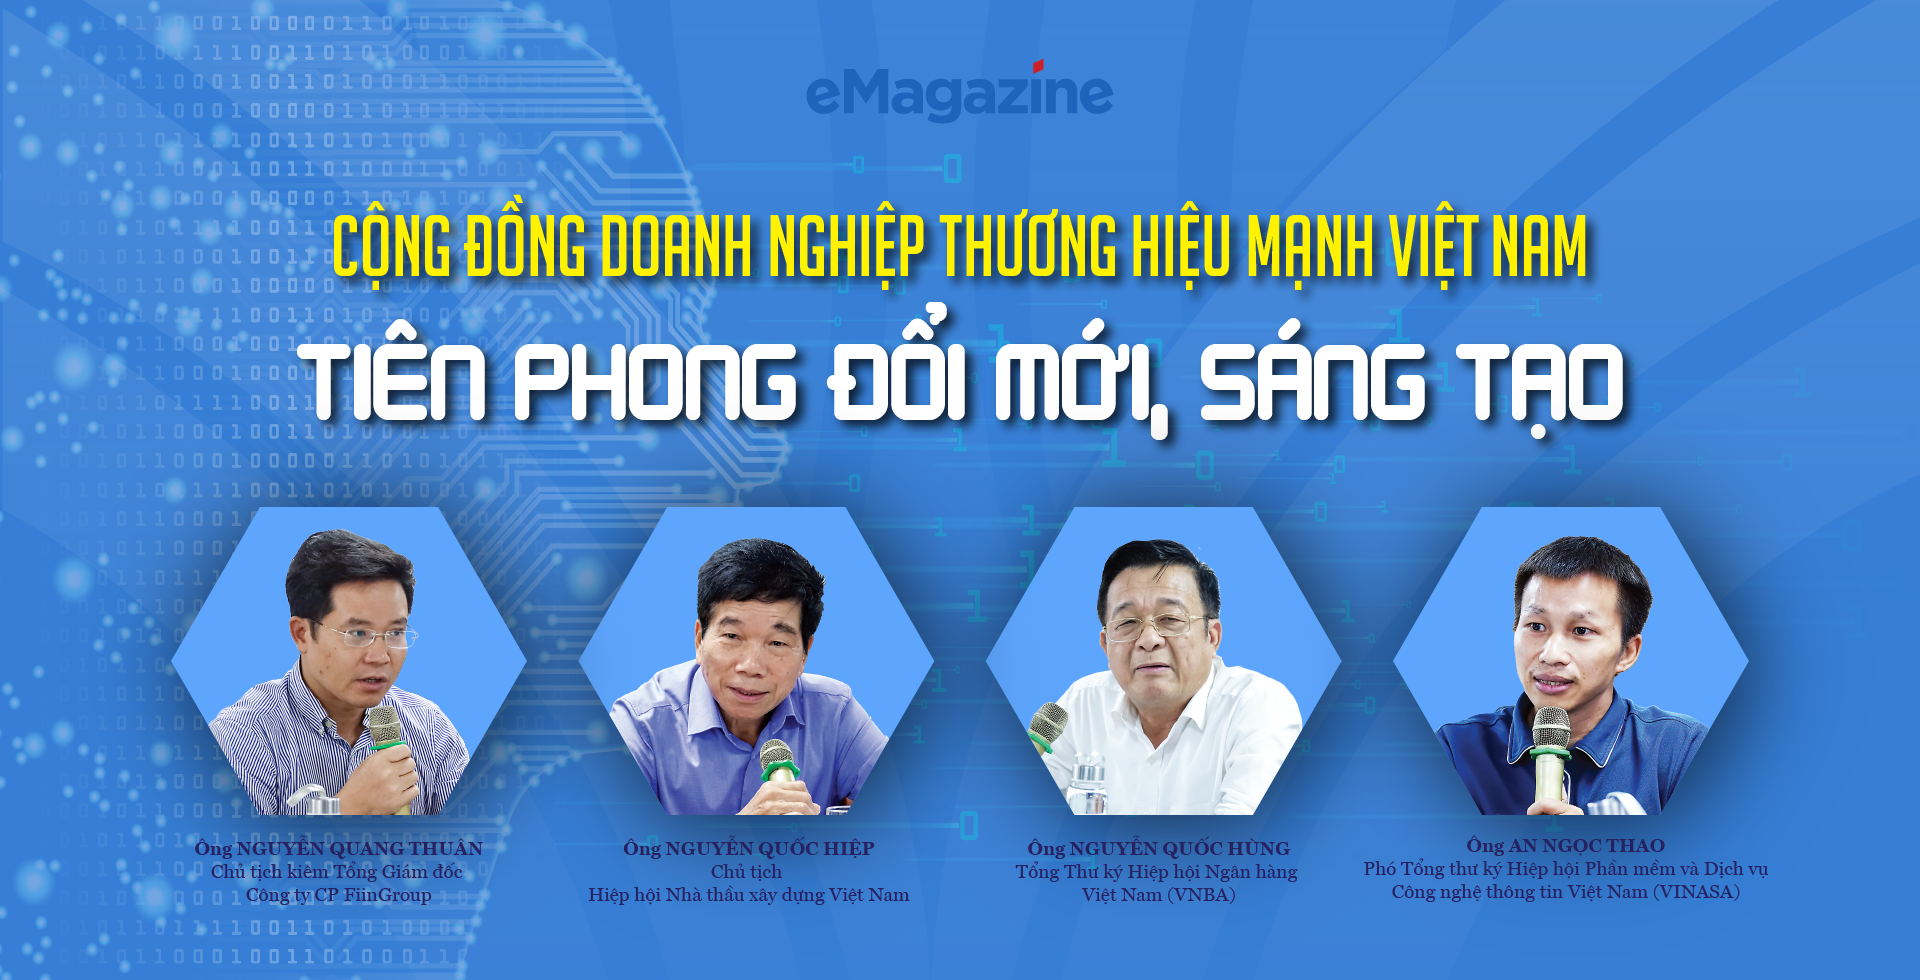 Cộng đồng doanh nghiệp Thương hiệu Mạnh Việt Nam: Tiên phong đổi mới, sáng  tạo   - Ảnh 1